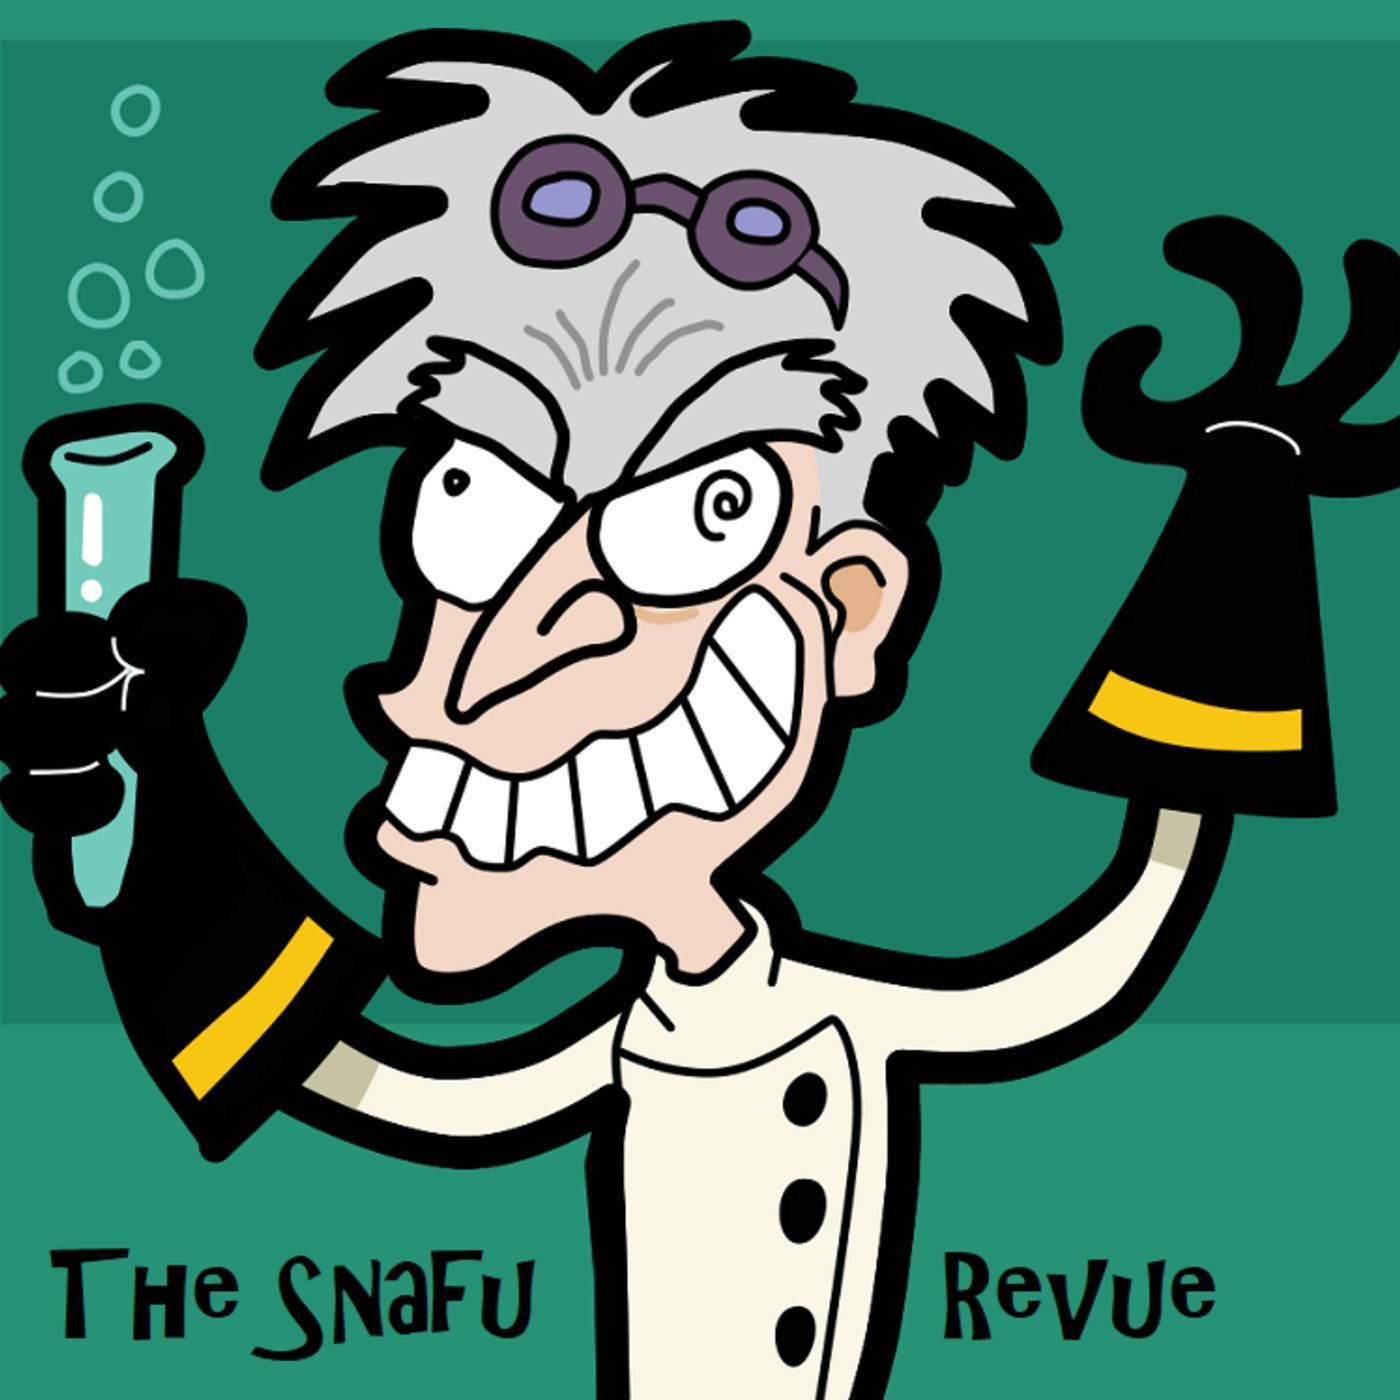 The Snafu Revue